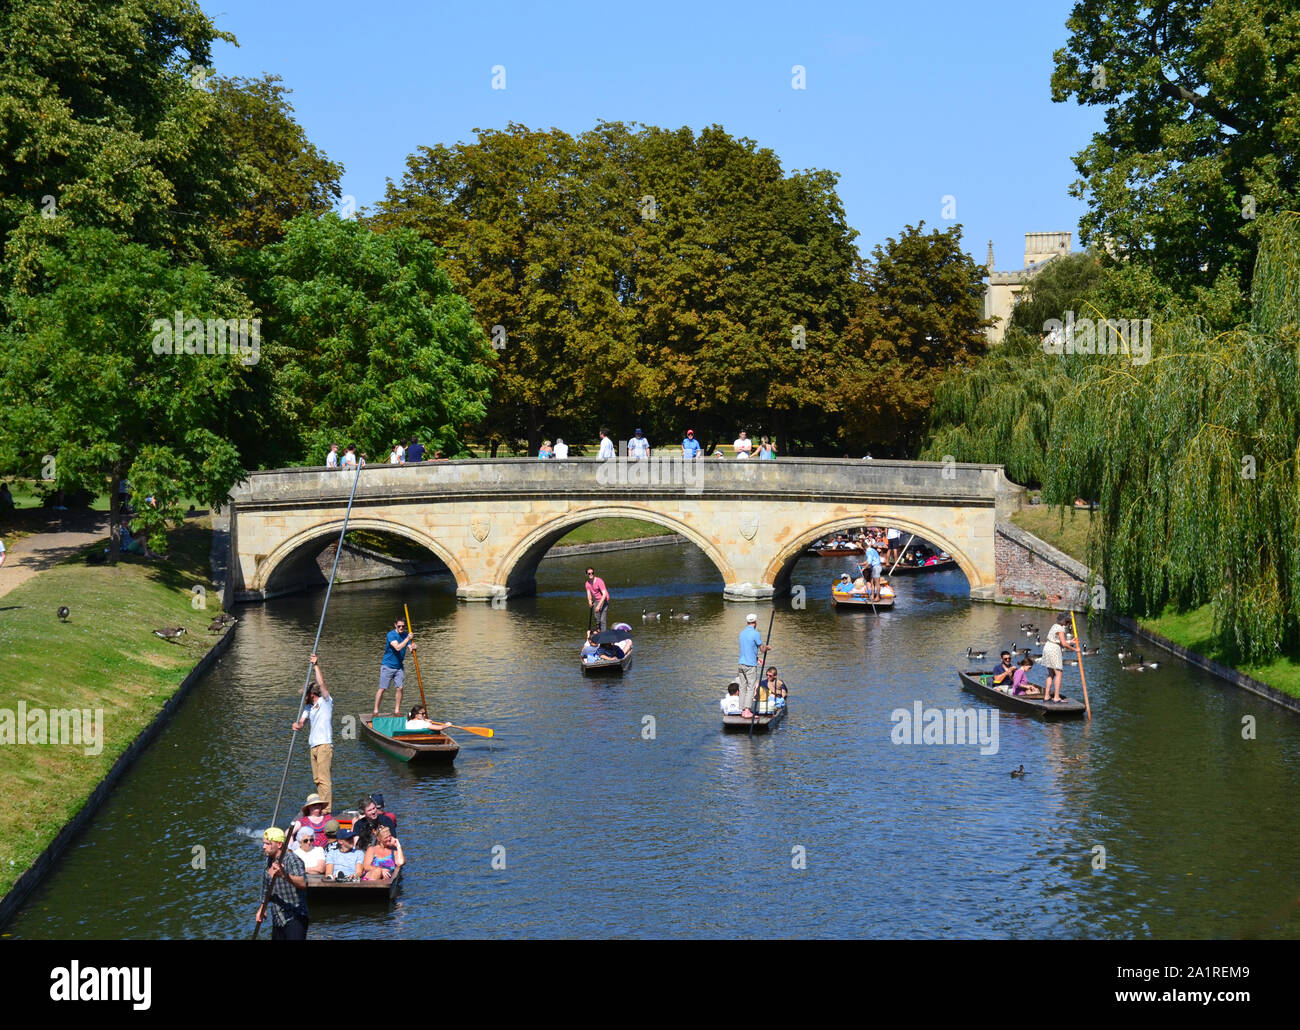 Old bridge and river in Cambridge, United Kingdom Stock Photo